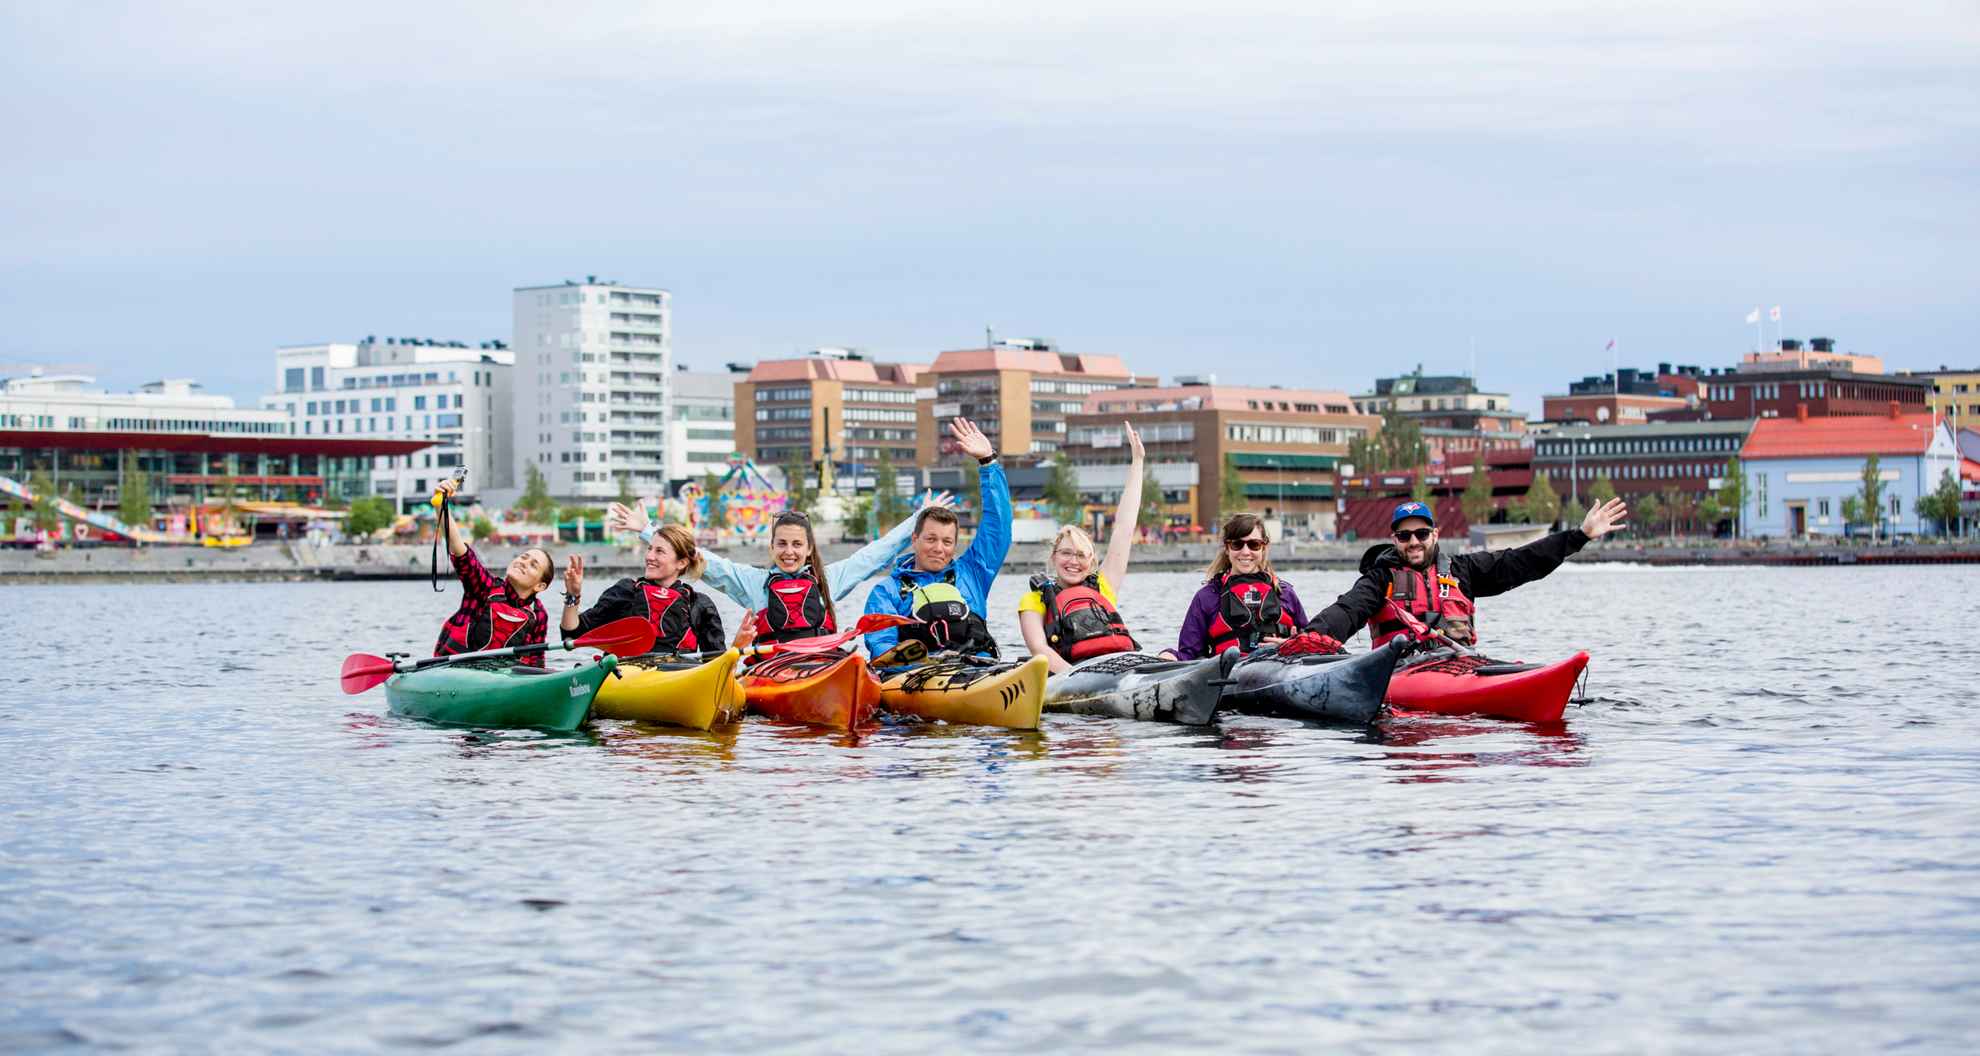 Un groupe de sept personnes en train de faire du kayak. Elles sont rassemblées et font face à la caméra dans la mer en face de la ville de Luleå.